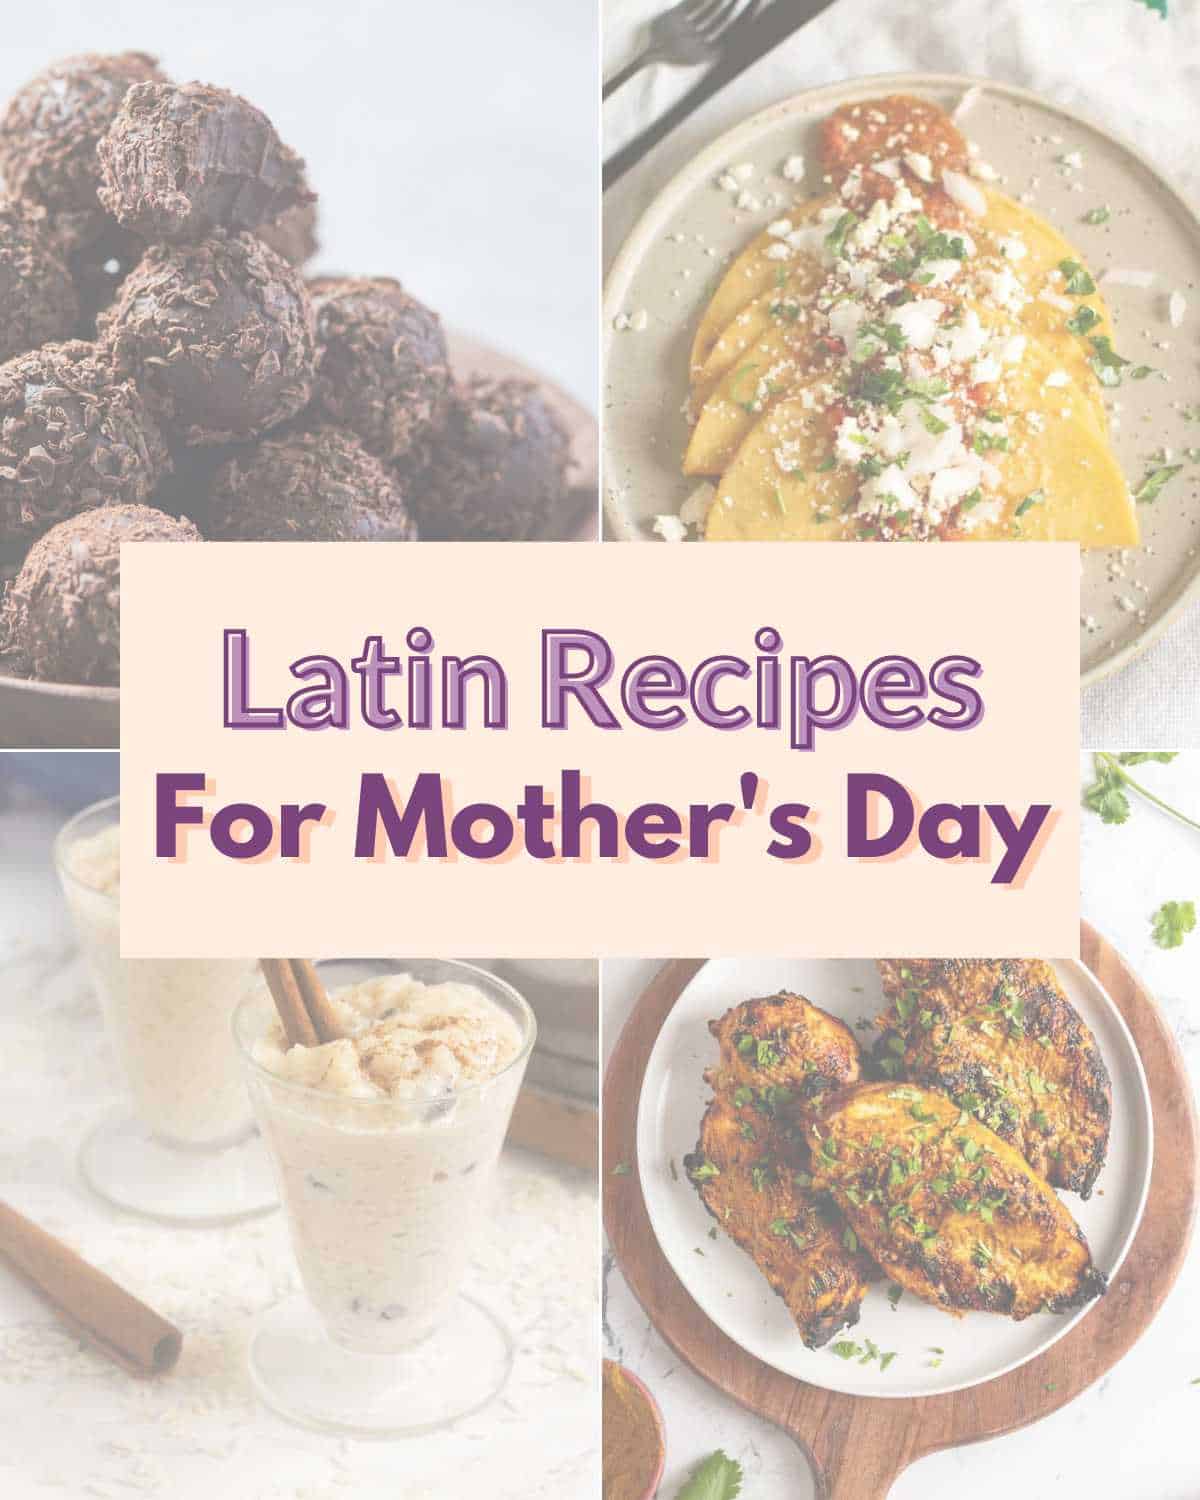 A collage of top right brigadeiros, top left entomatadas, bottom right arroz con leche, bottom left pollo asado and text overlay "Latin Recipes for Mother's Day".